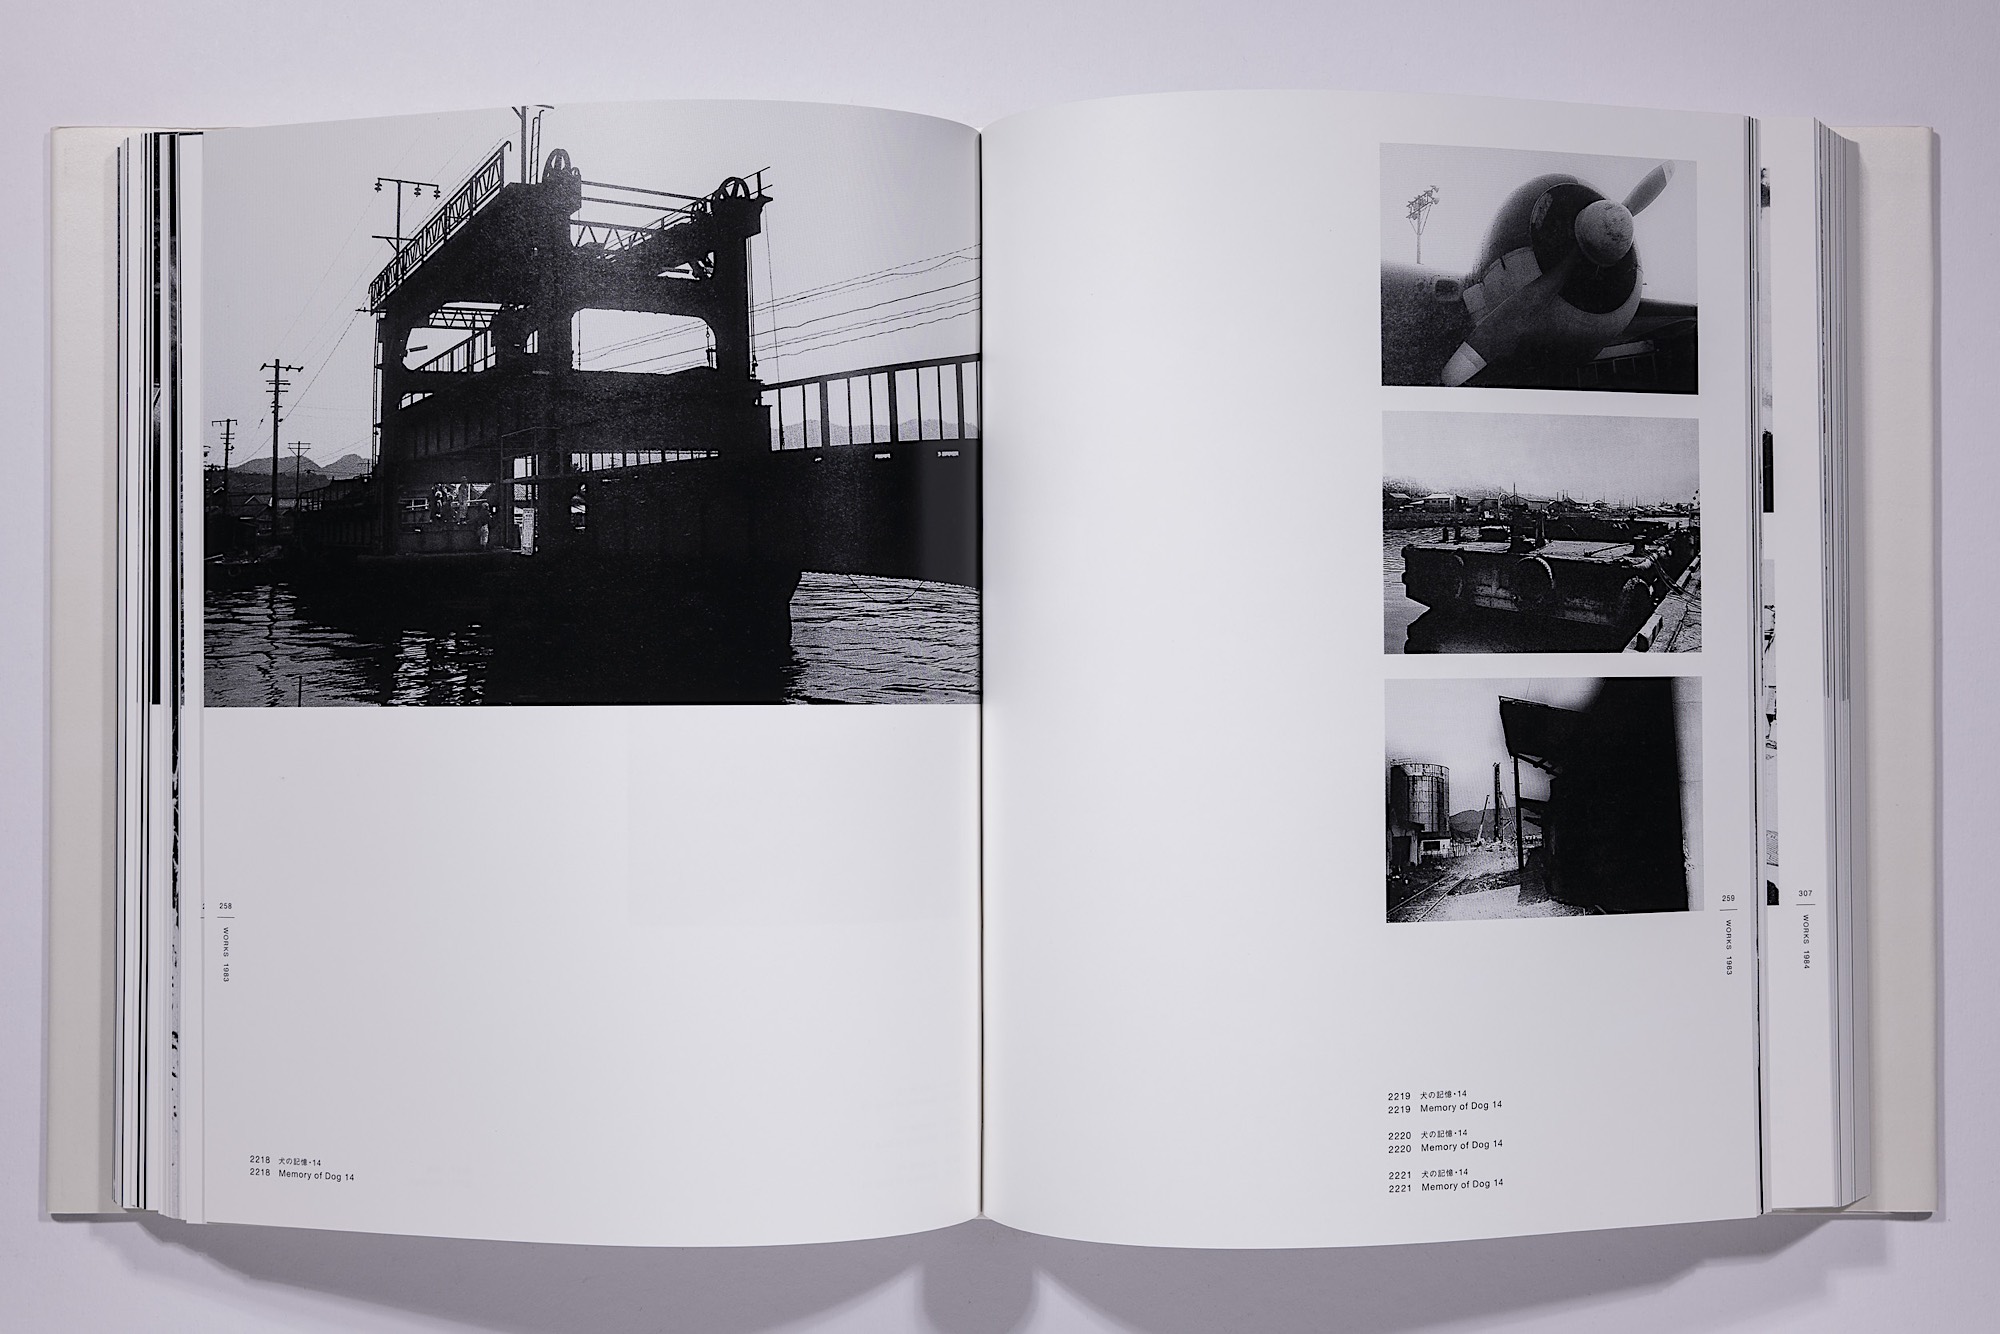 Daido Moriyama - The Complete Works of Daido Moriyama Image 51